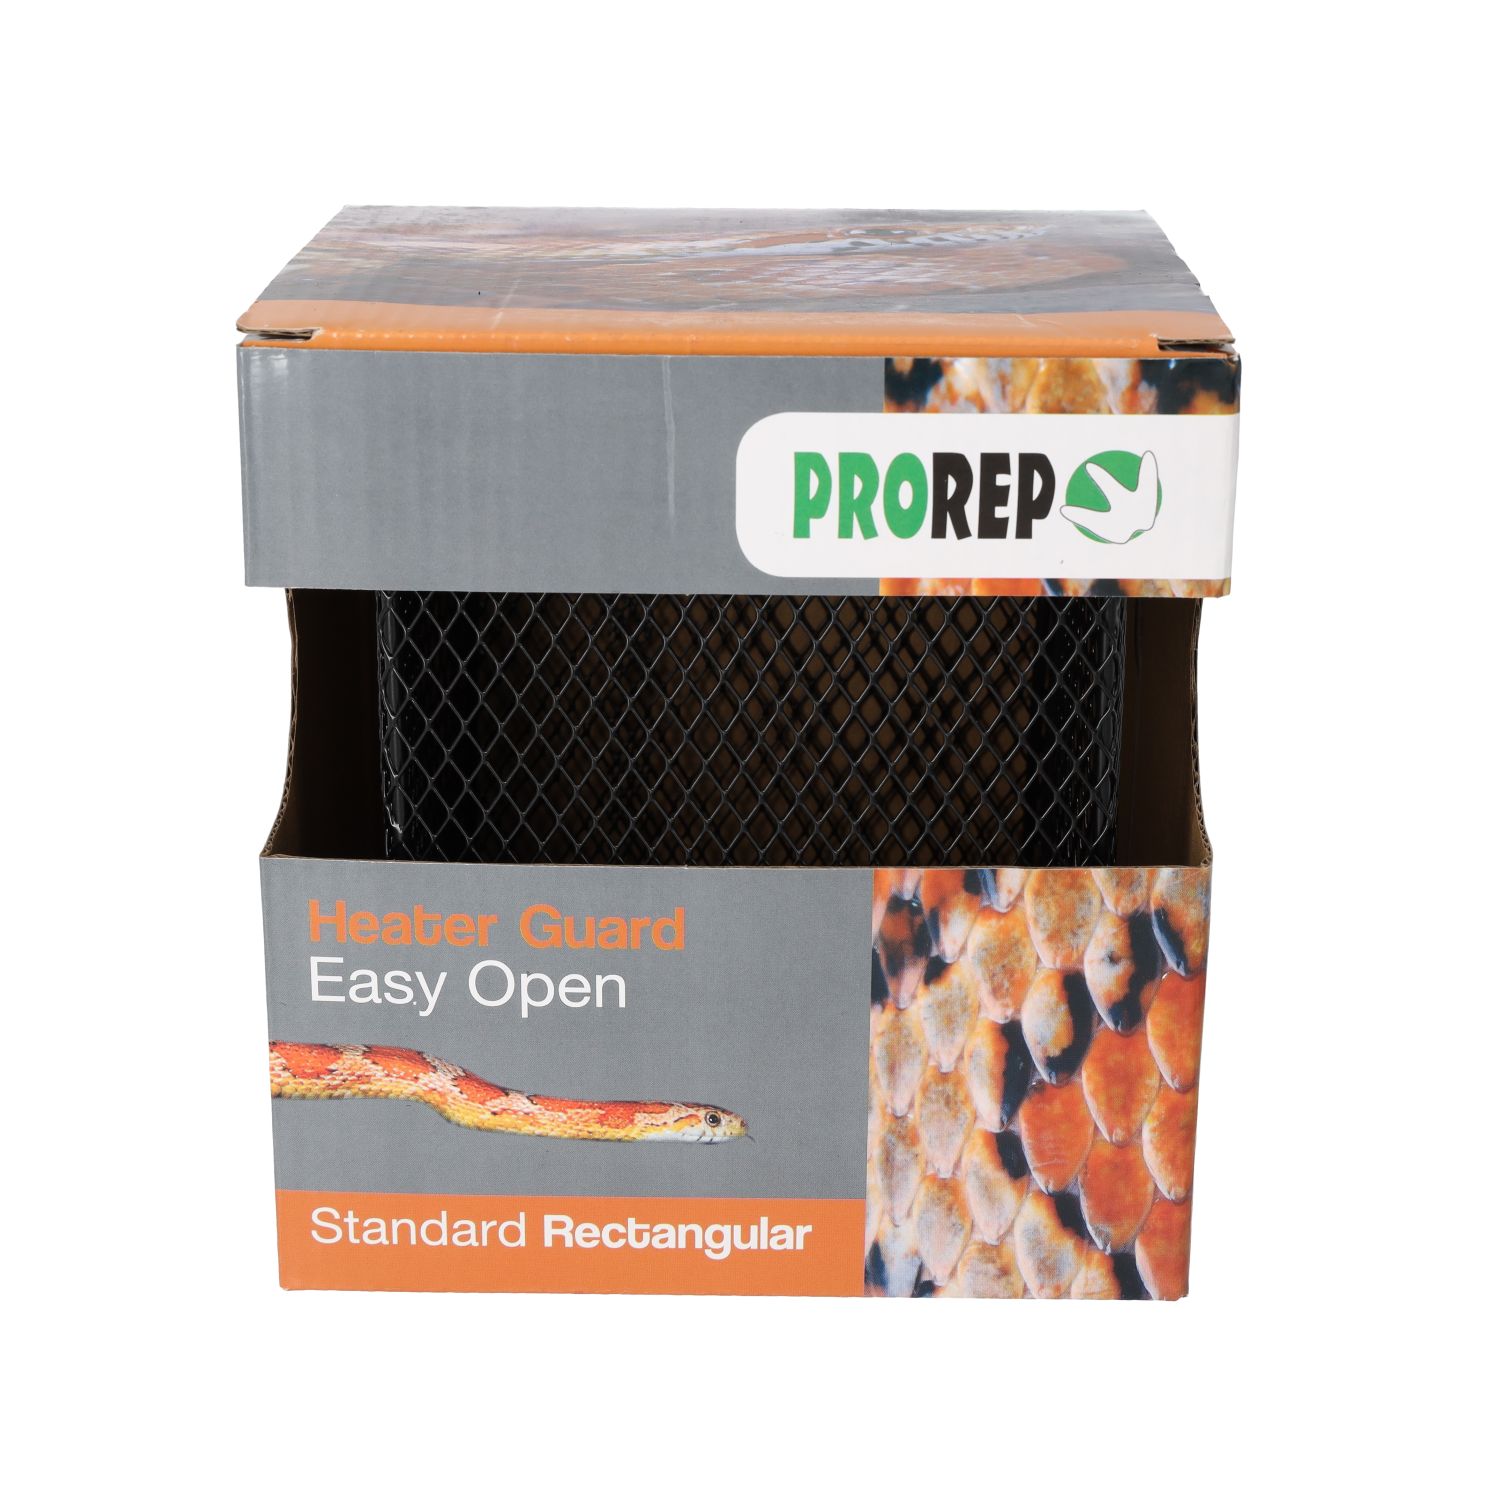 PR Heater Guard Standard Rectangular Easy Open